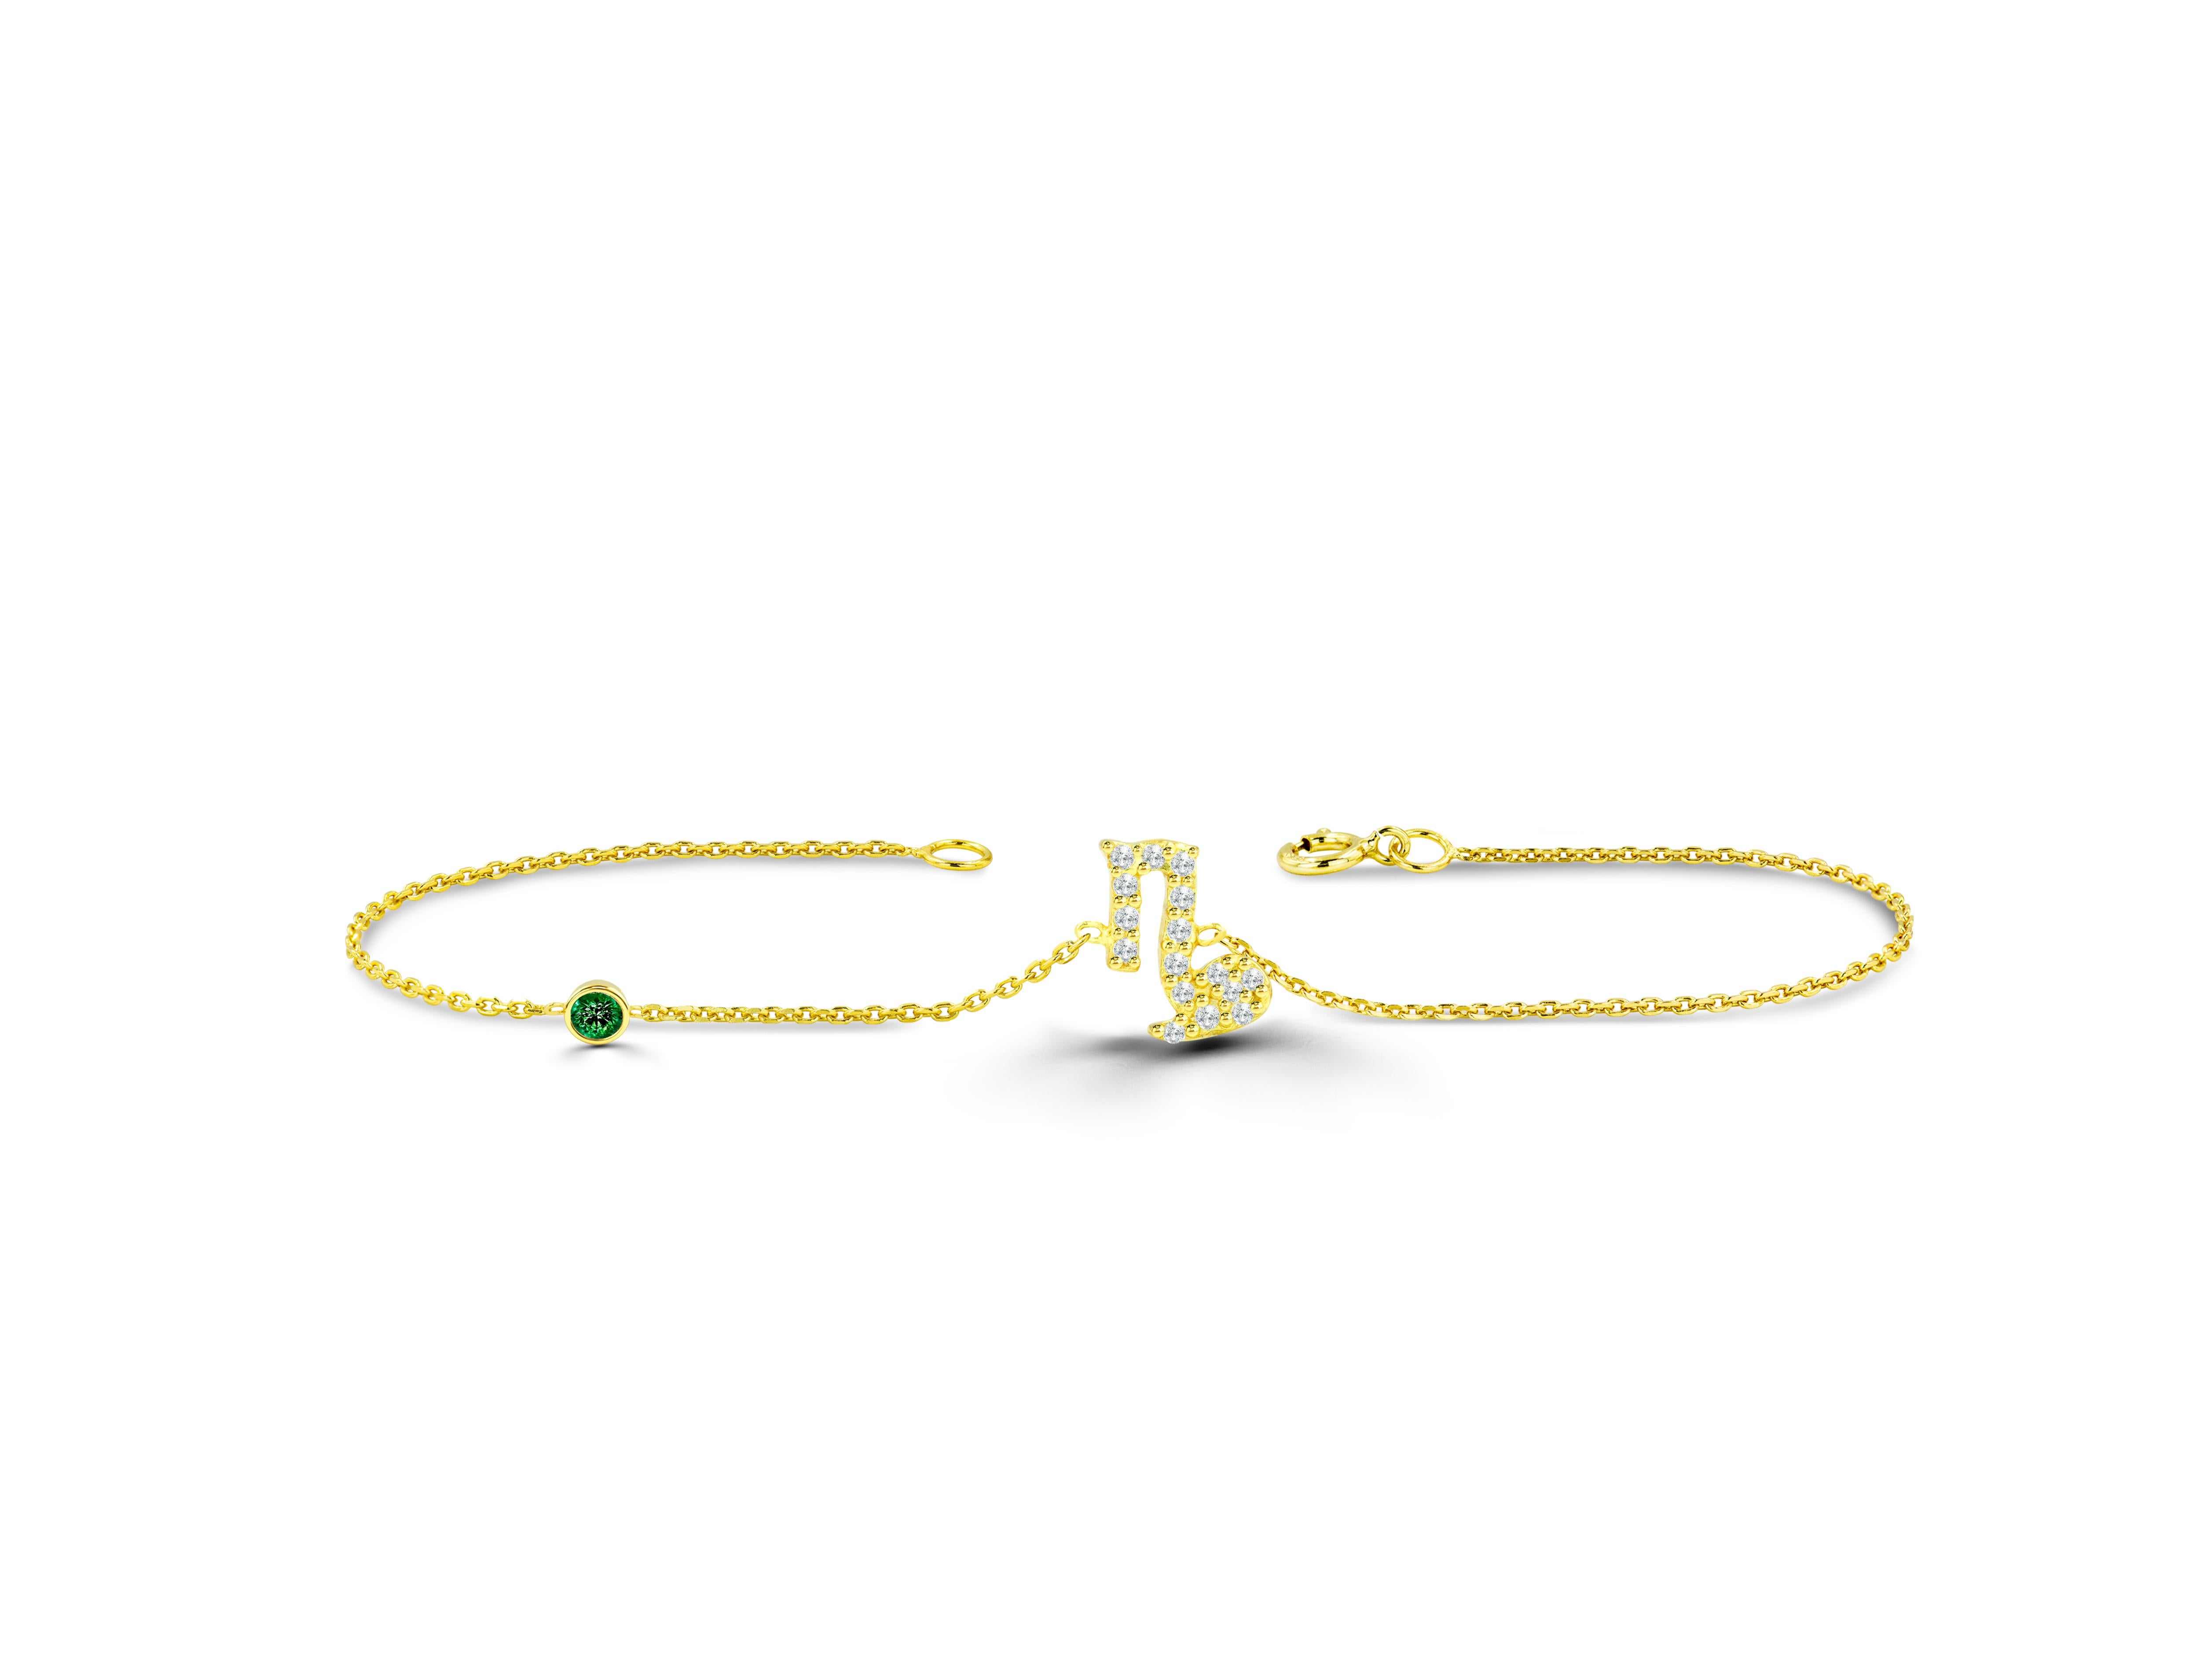 Ce bracelet de diamants Capricorne est censé vous représenter. Ce bracelet du signe du Zodiac est livré avec une pierre de naissance de votre choix : rubis, saphir ou émeraude. Notre collection de bijoux du Zodiac comprend ce superbe bracelet